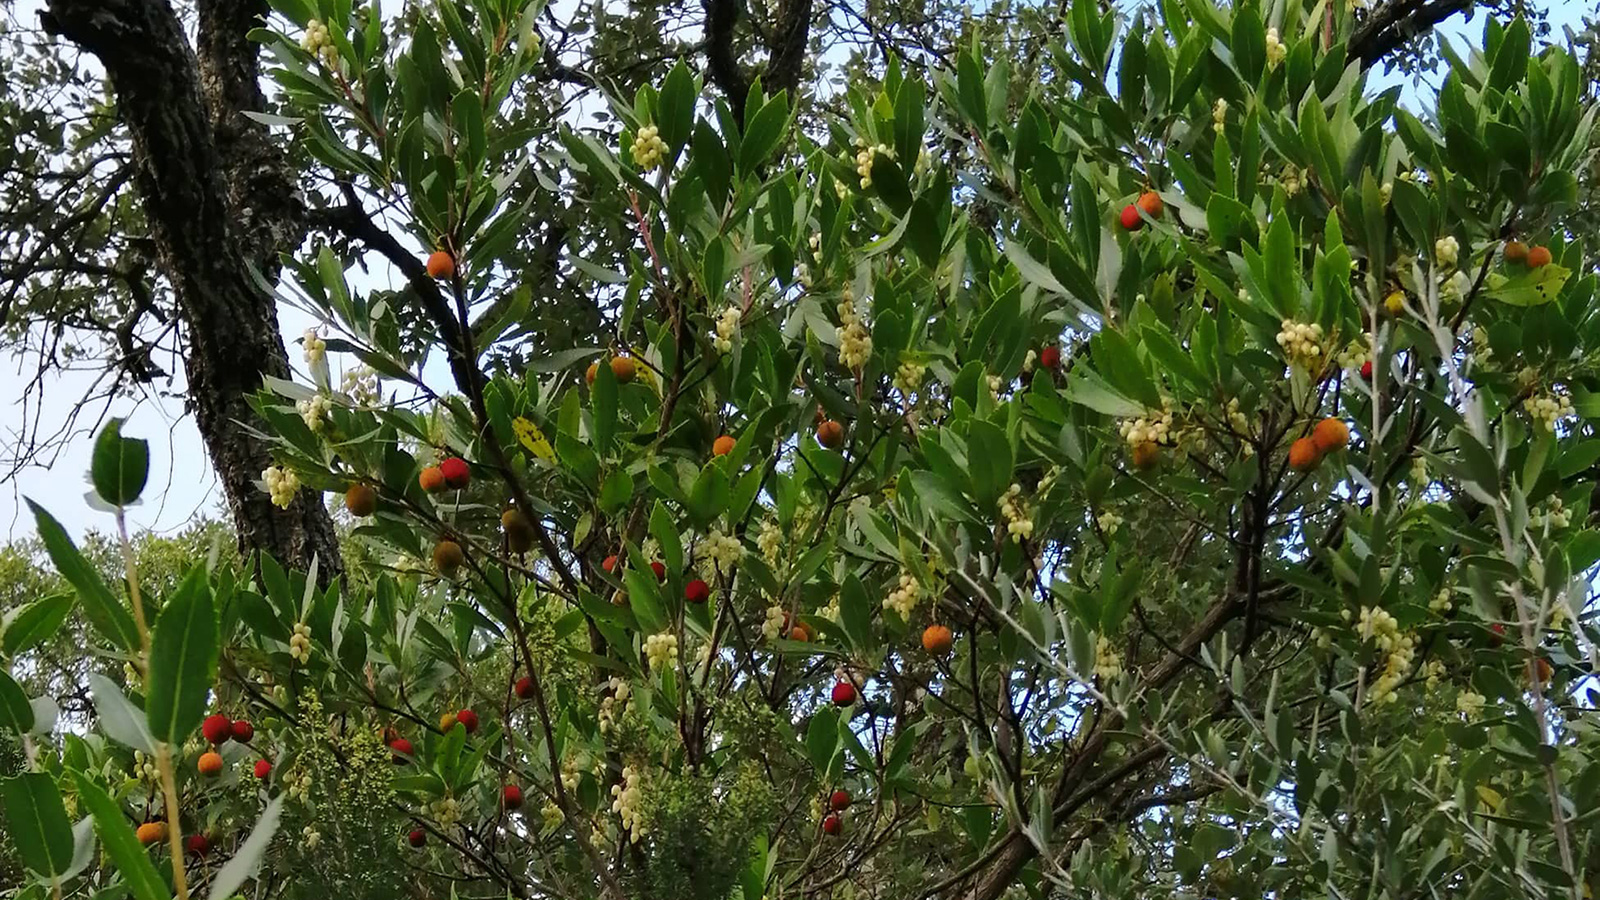 ثمرات اللنج الحمراء والصفراء تضفي جمالا على الشجرة(الجزيرة)